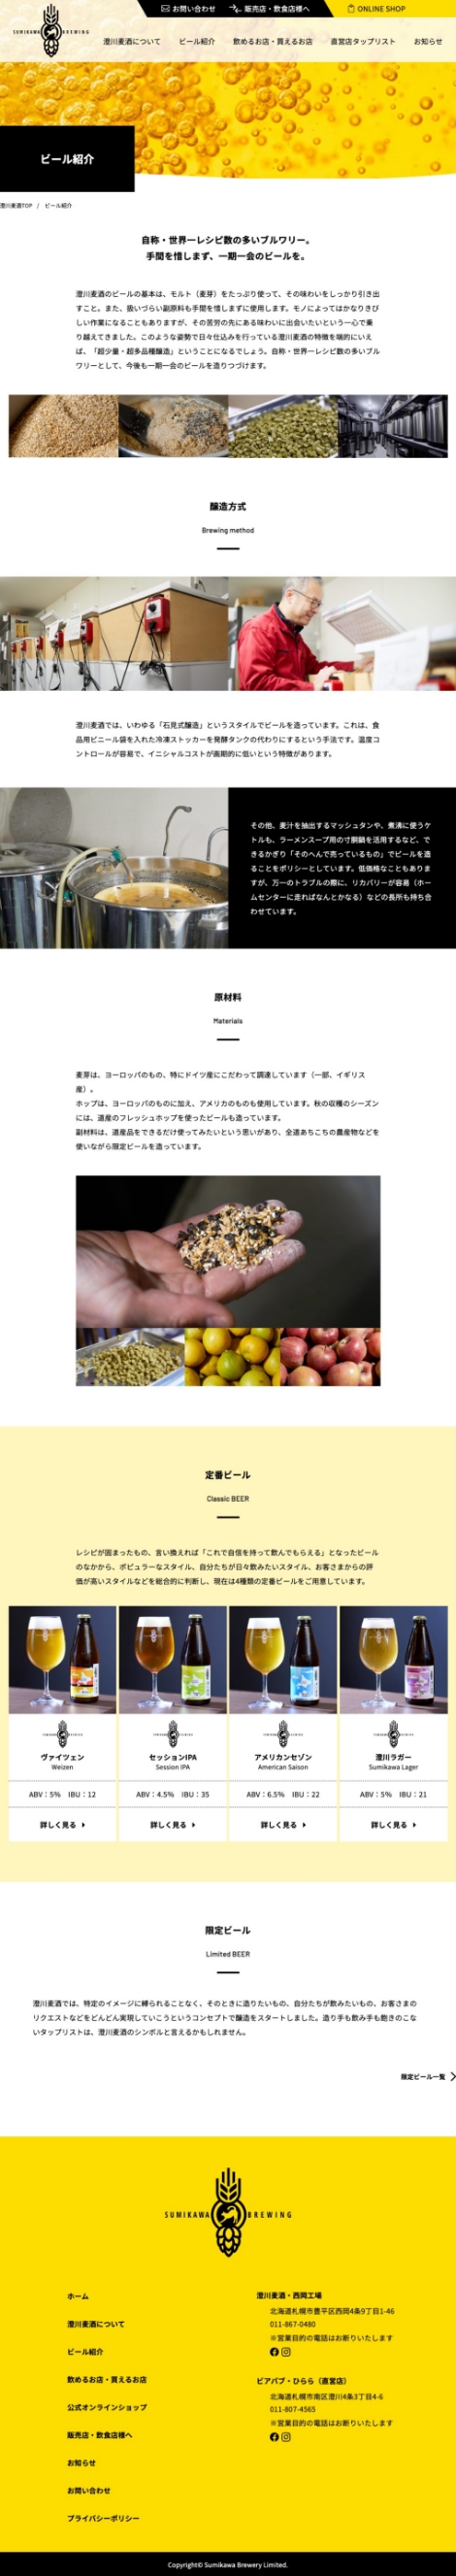 澄川麦酒の下層ページデザイン